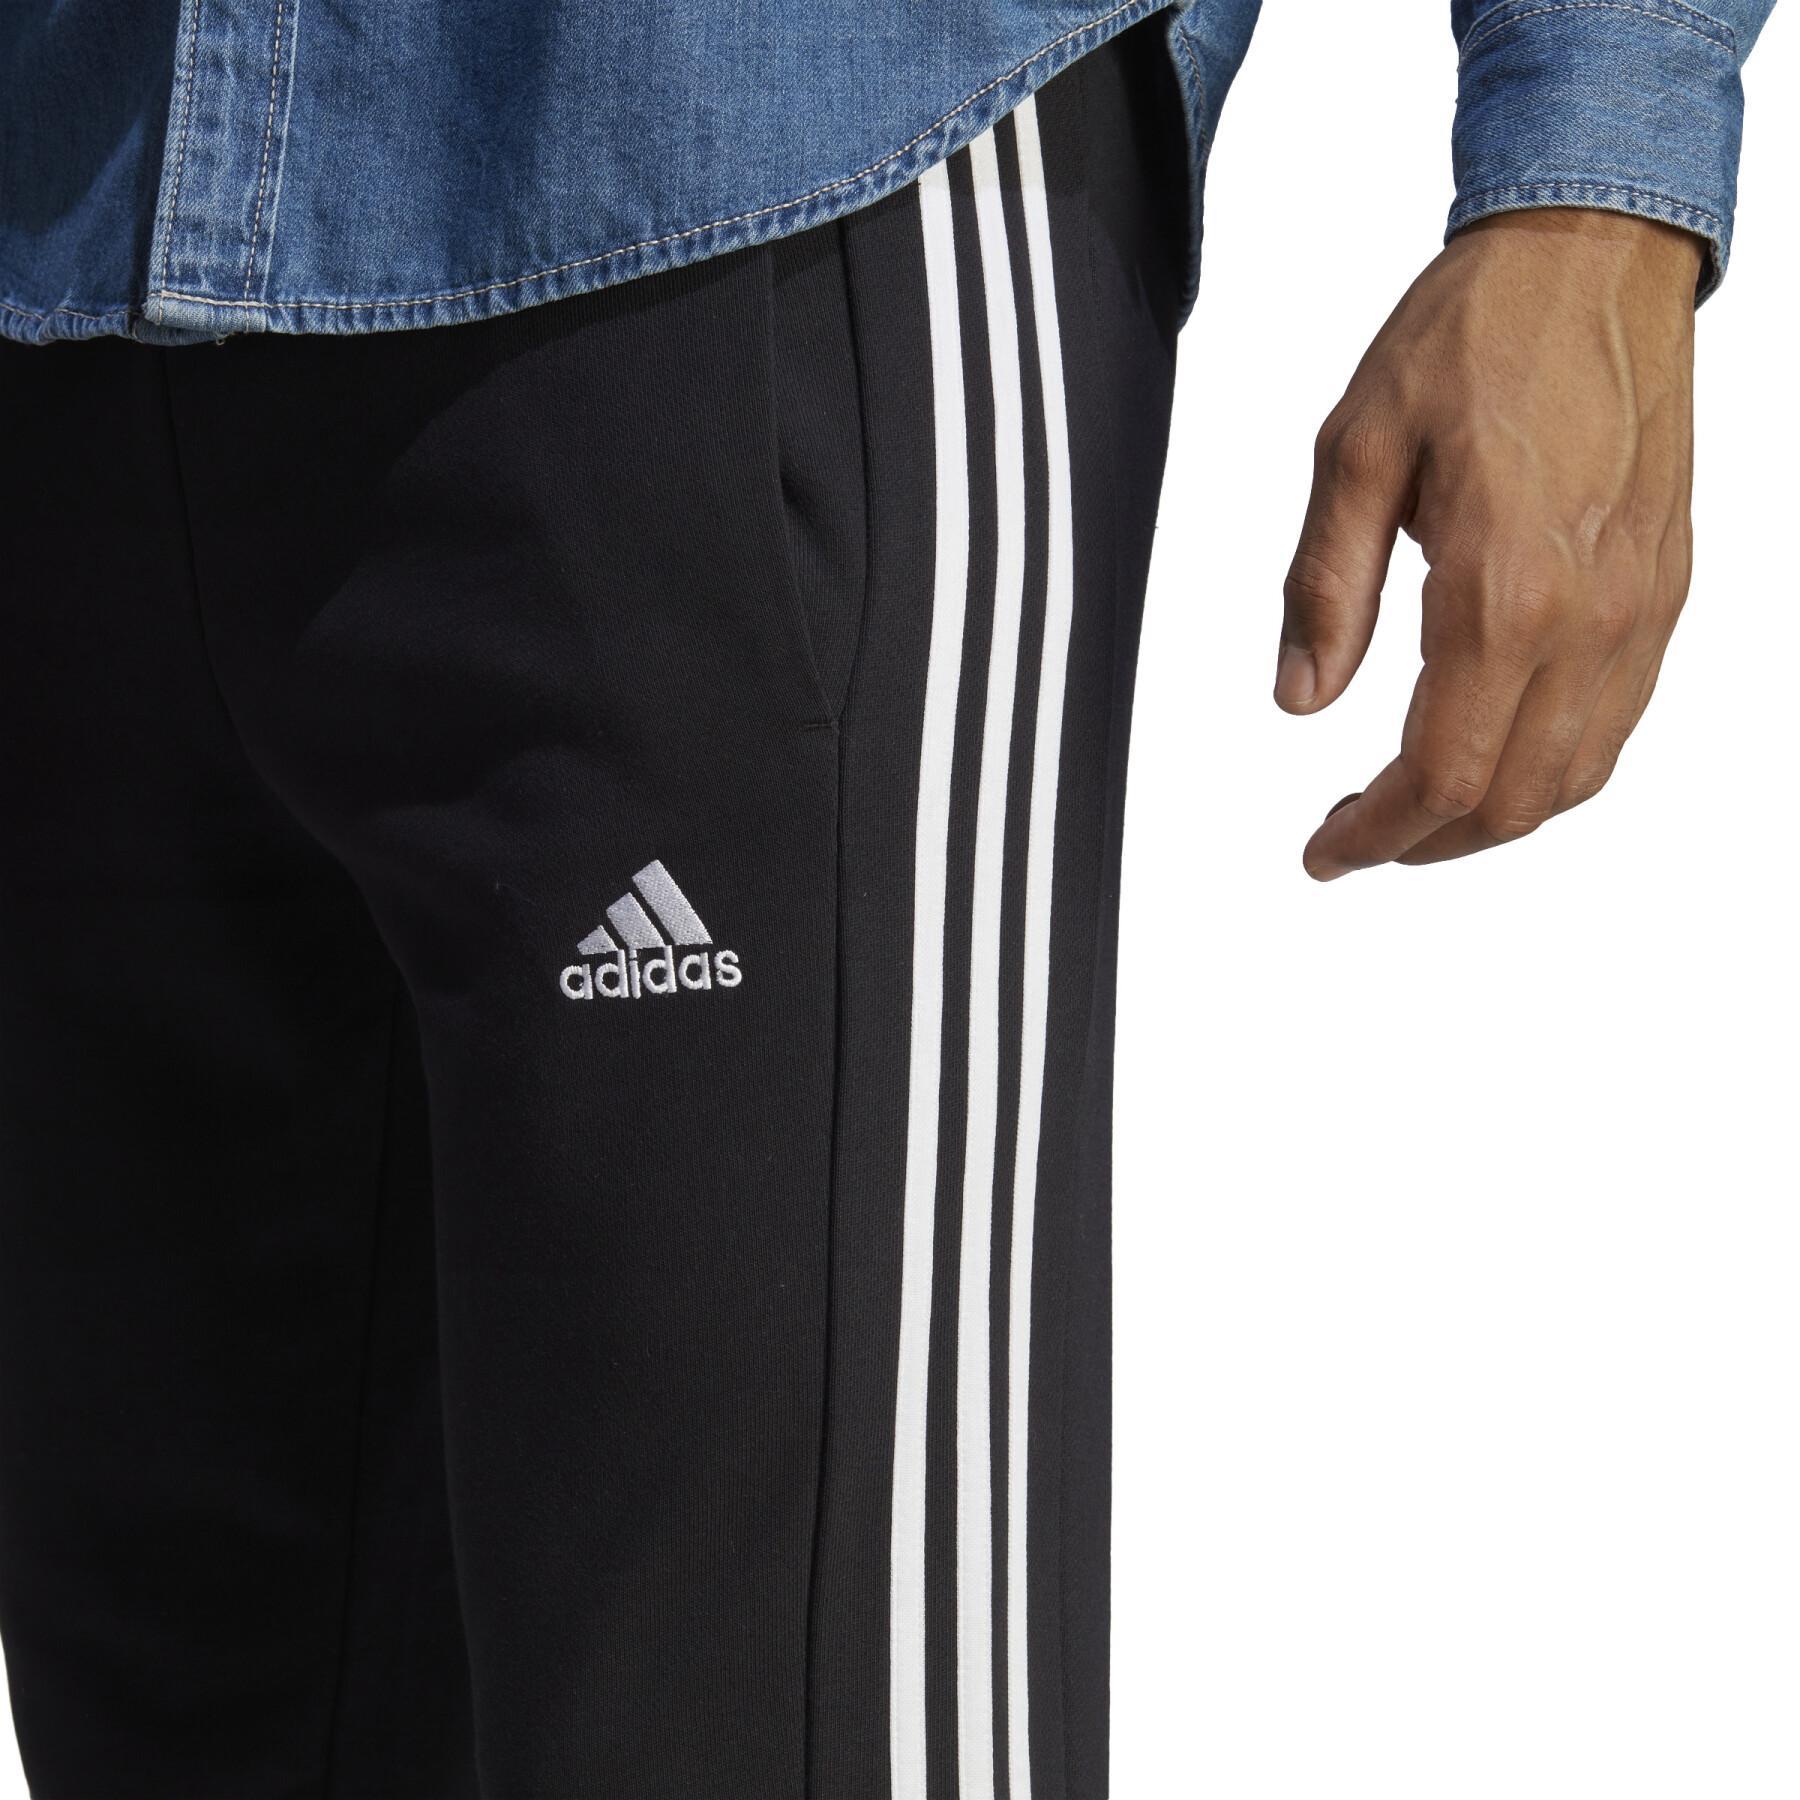 Jogging adidas Essentials French Terry - adidas - Pantalones entrenamiento - Ropa de fútbol